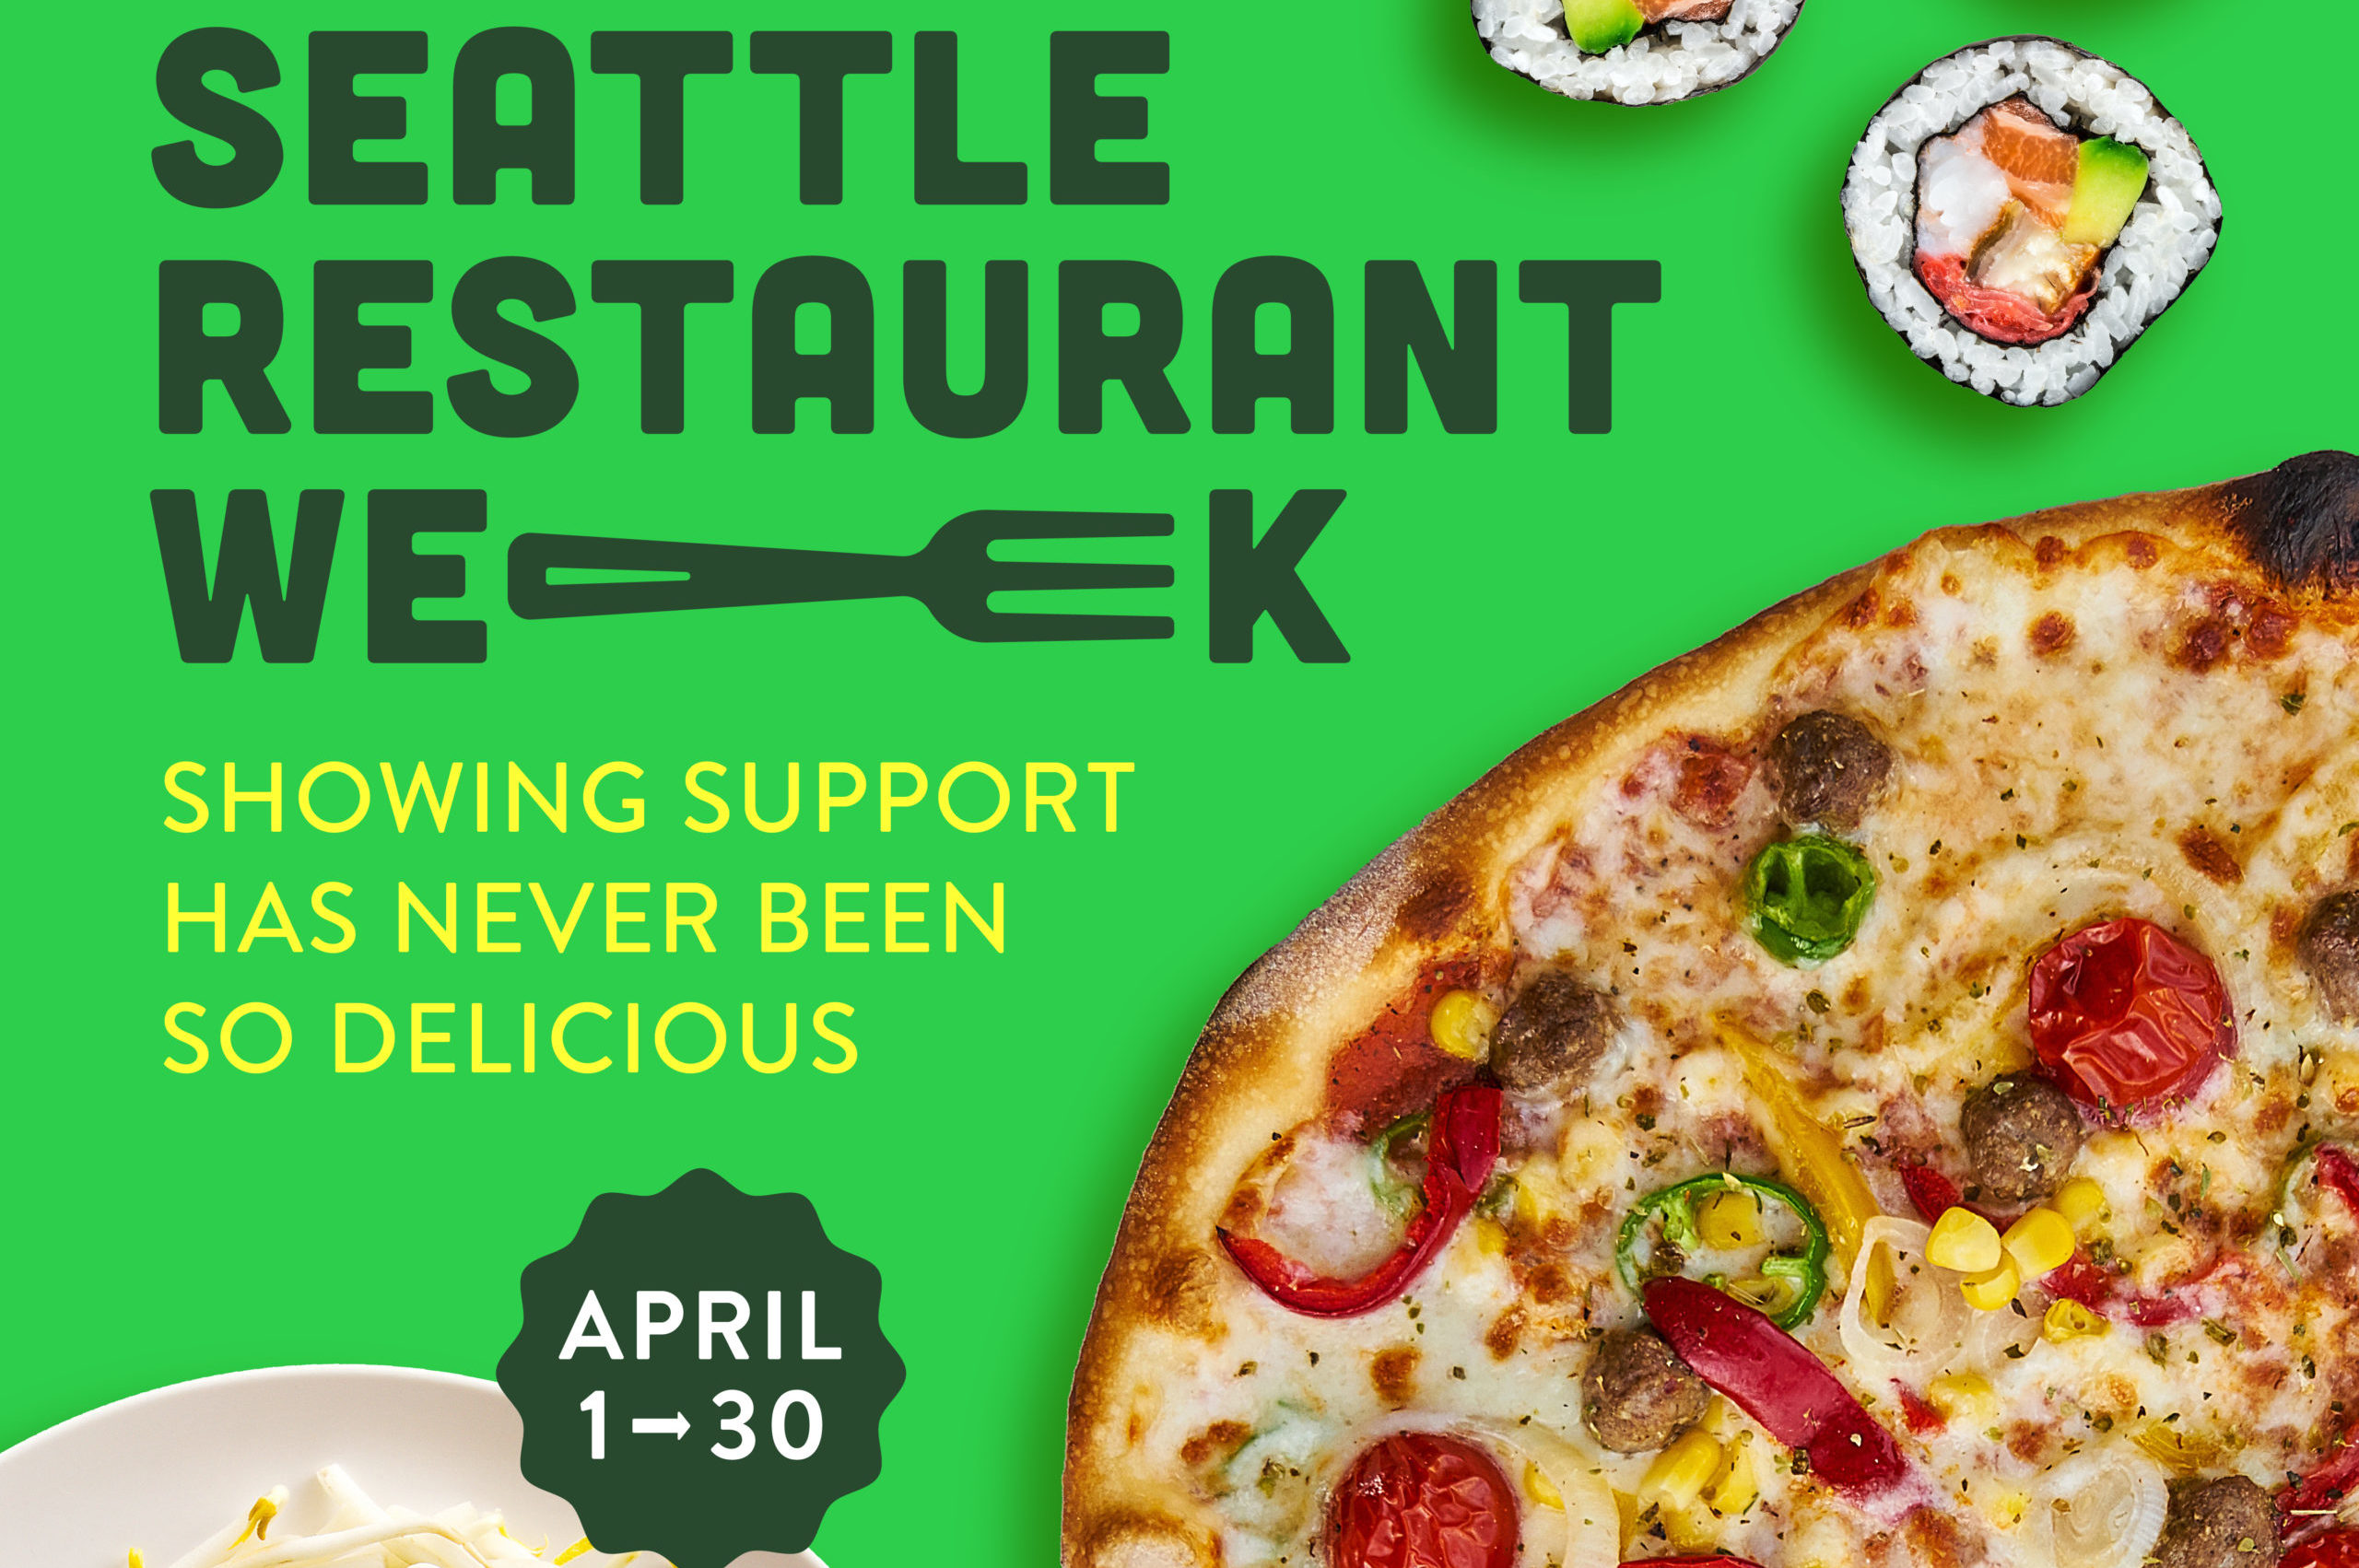 Seattle Restaurant Week Experience Tukwila